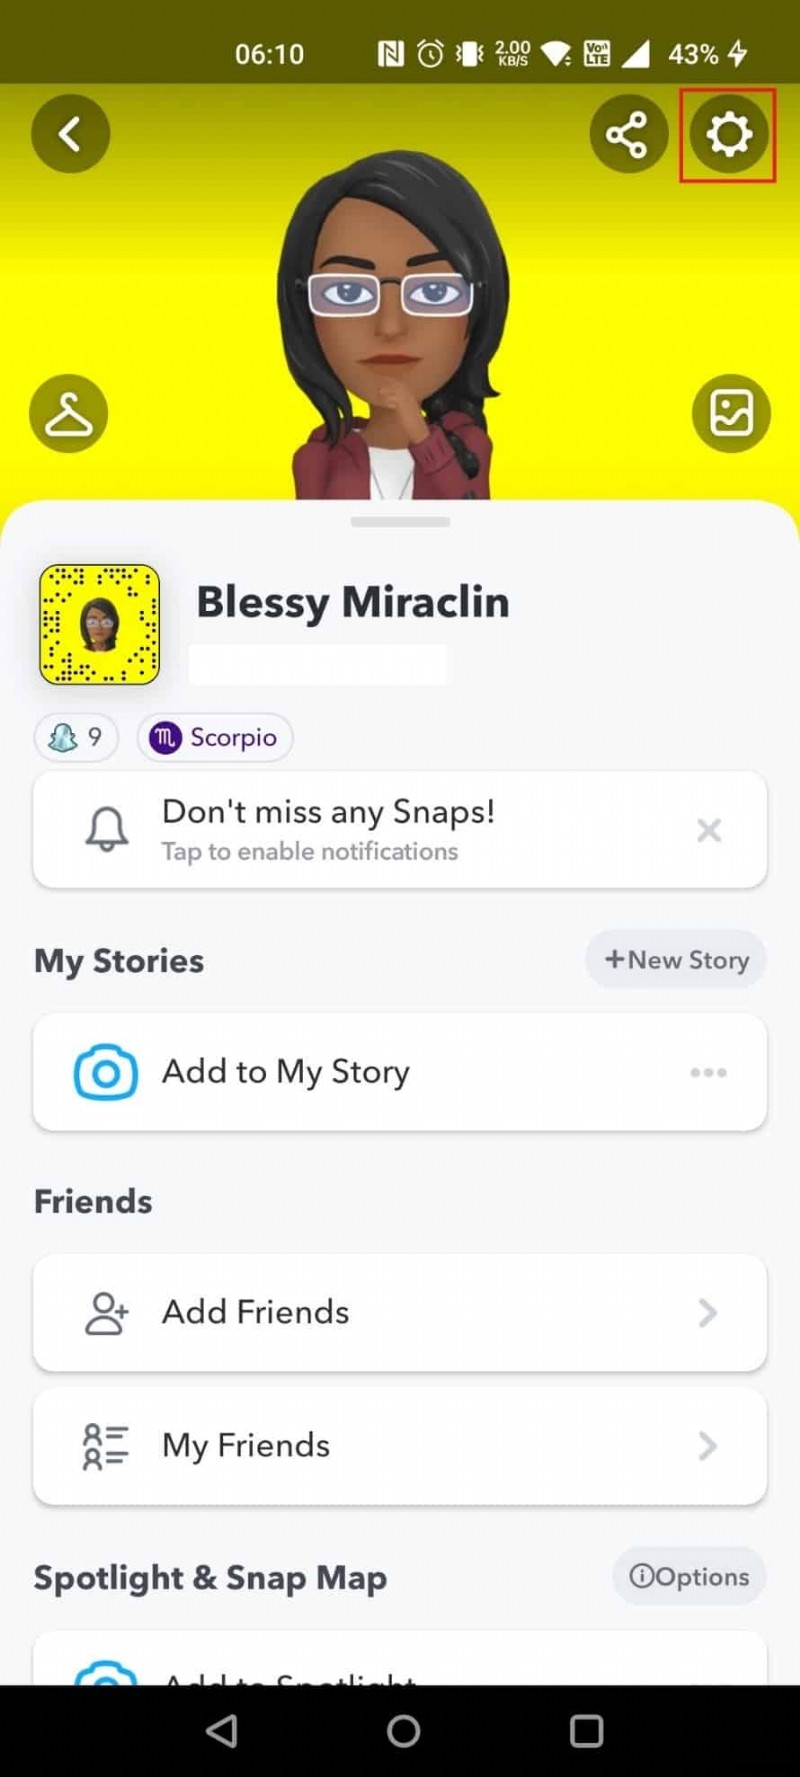 क्या Snapchat को ट्रेस किया जा सकता है?